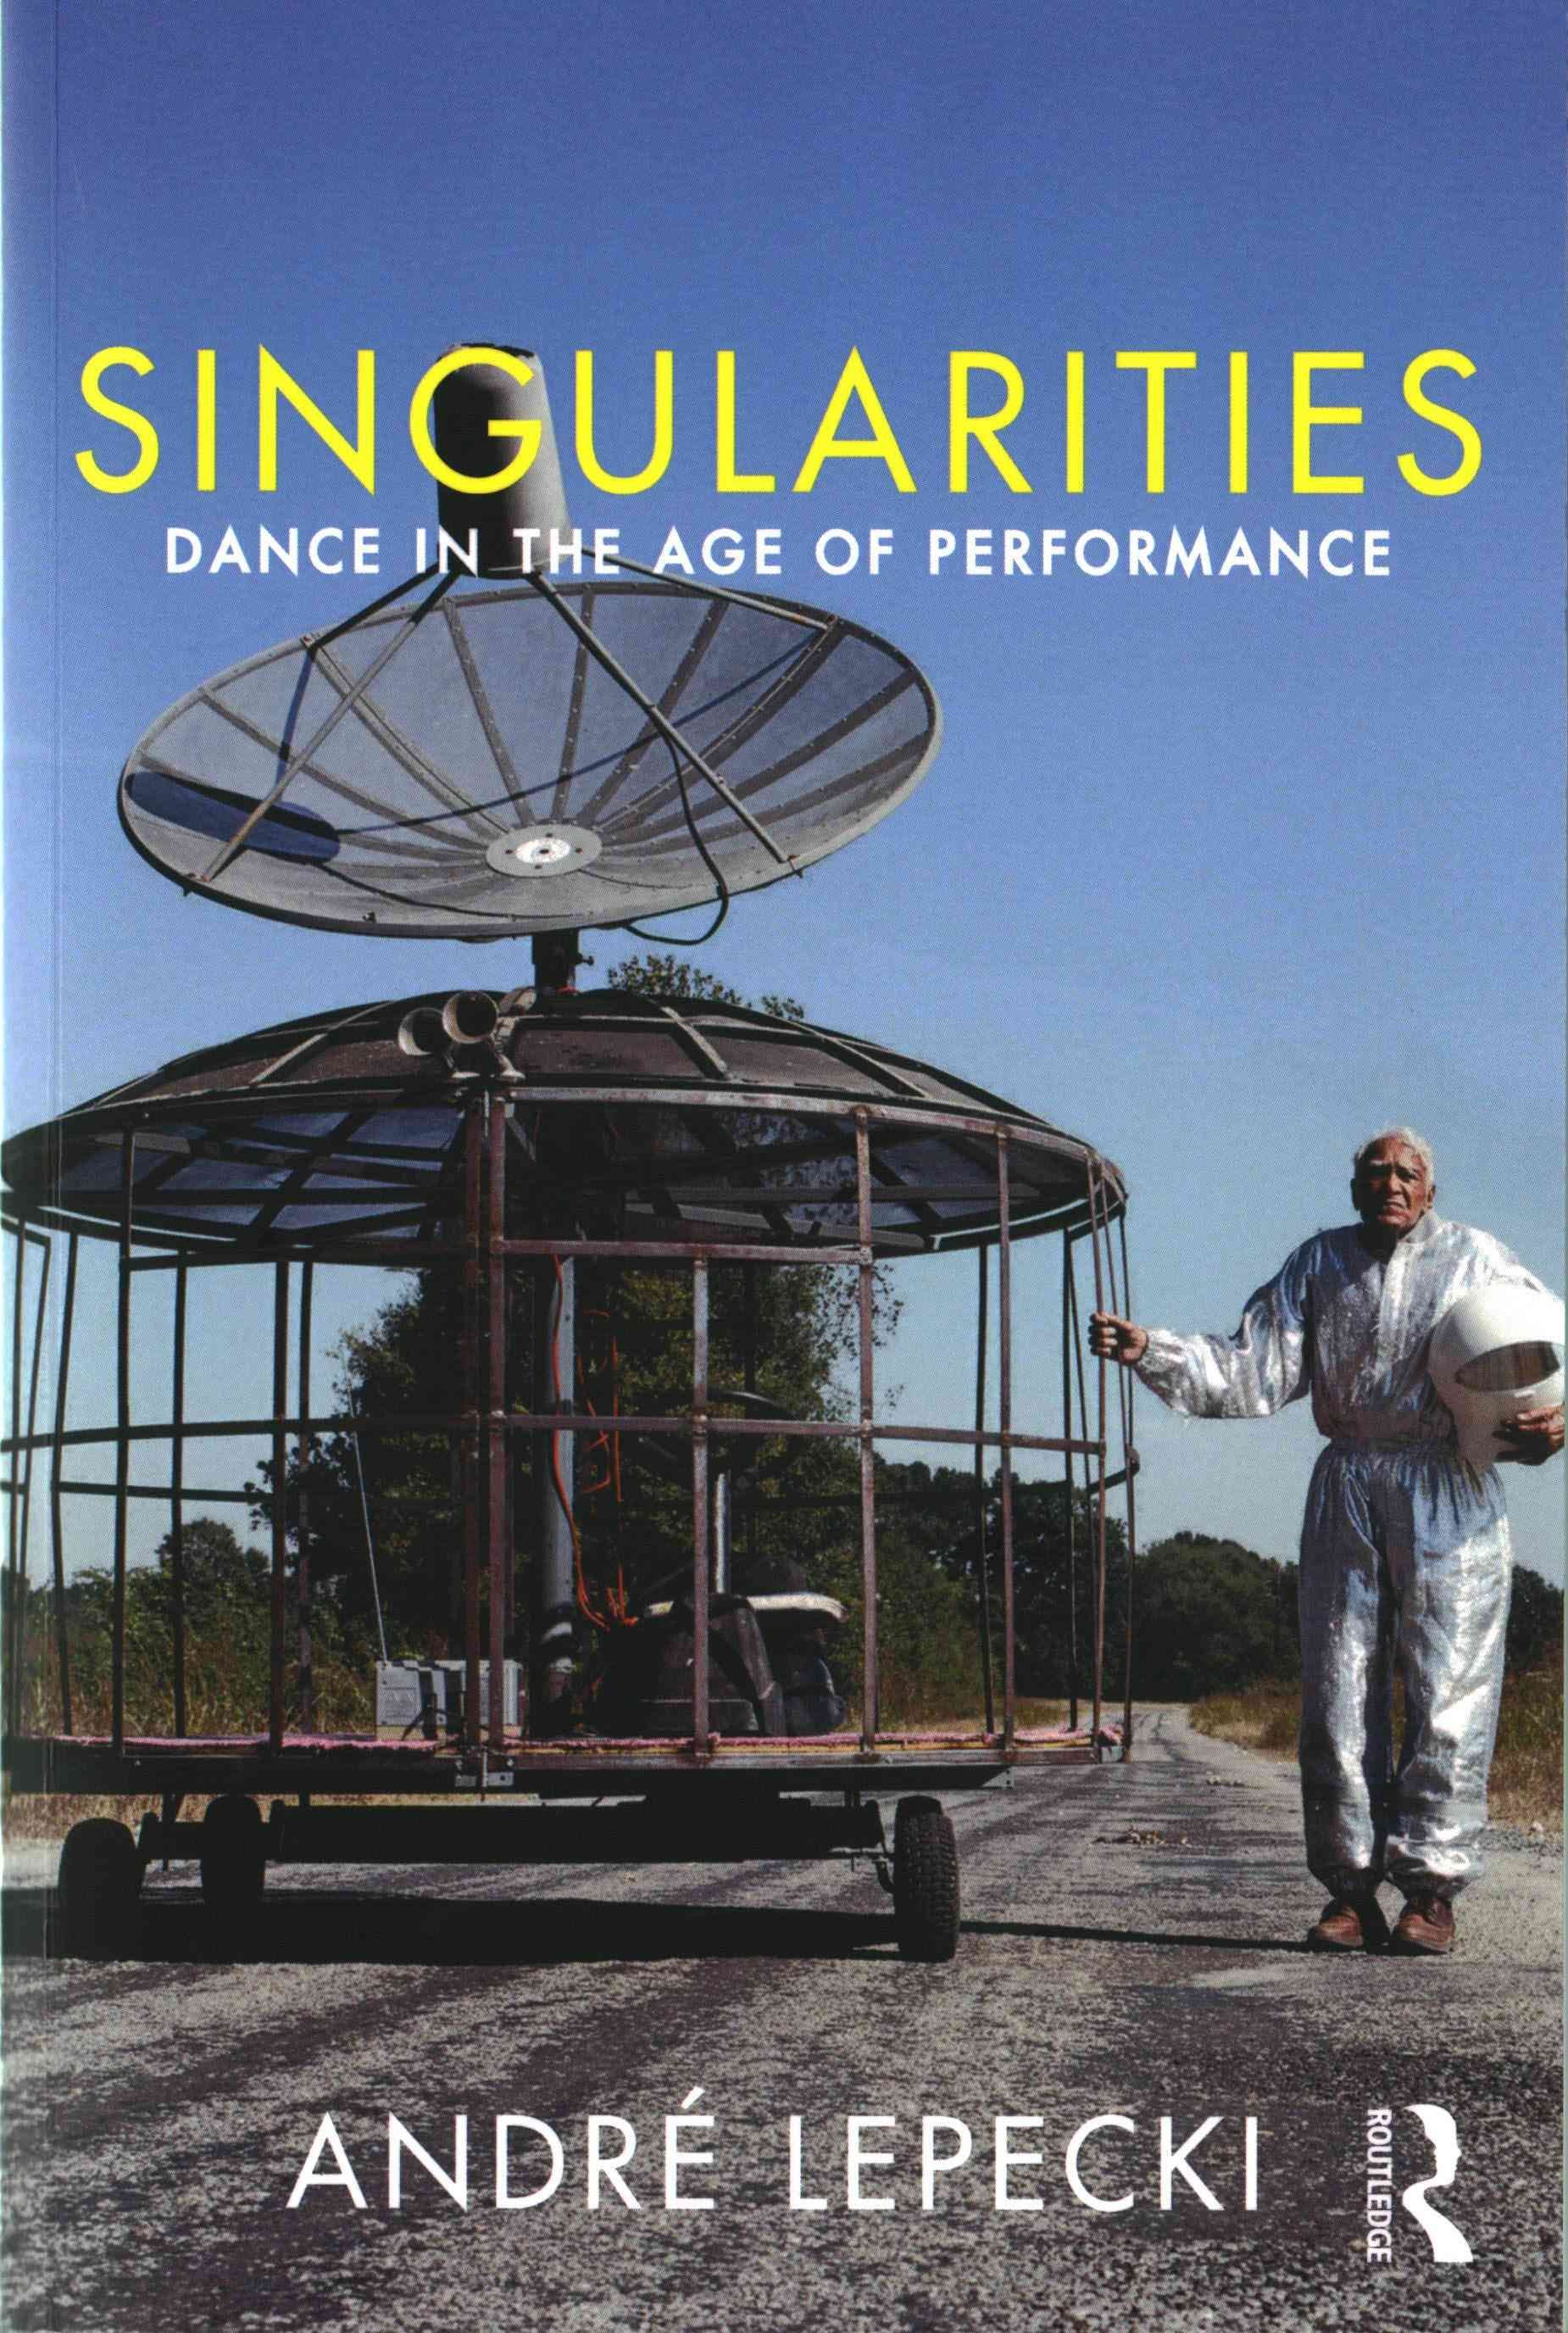 Singularities